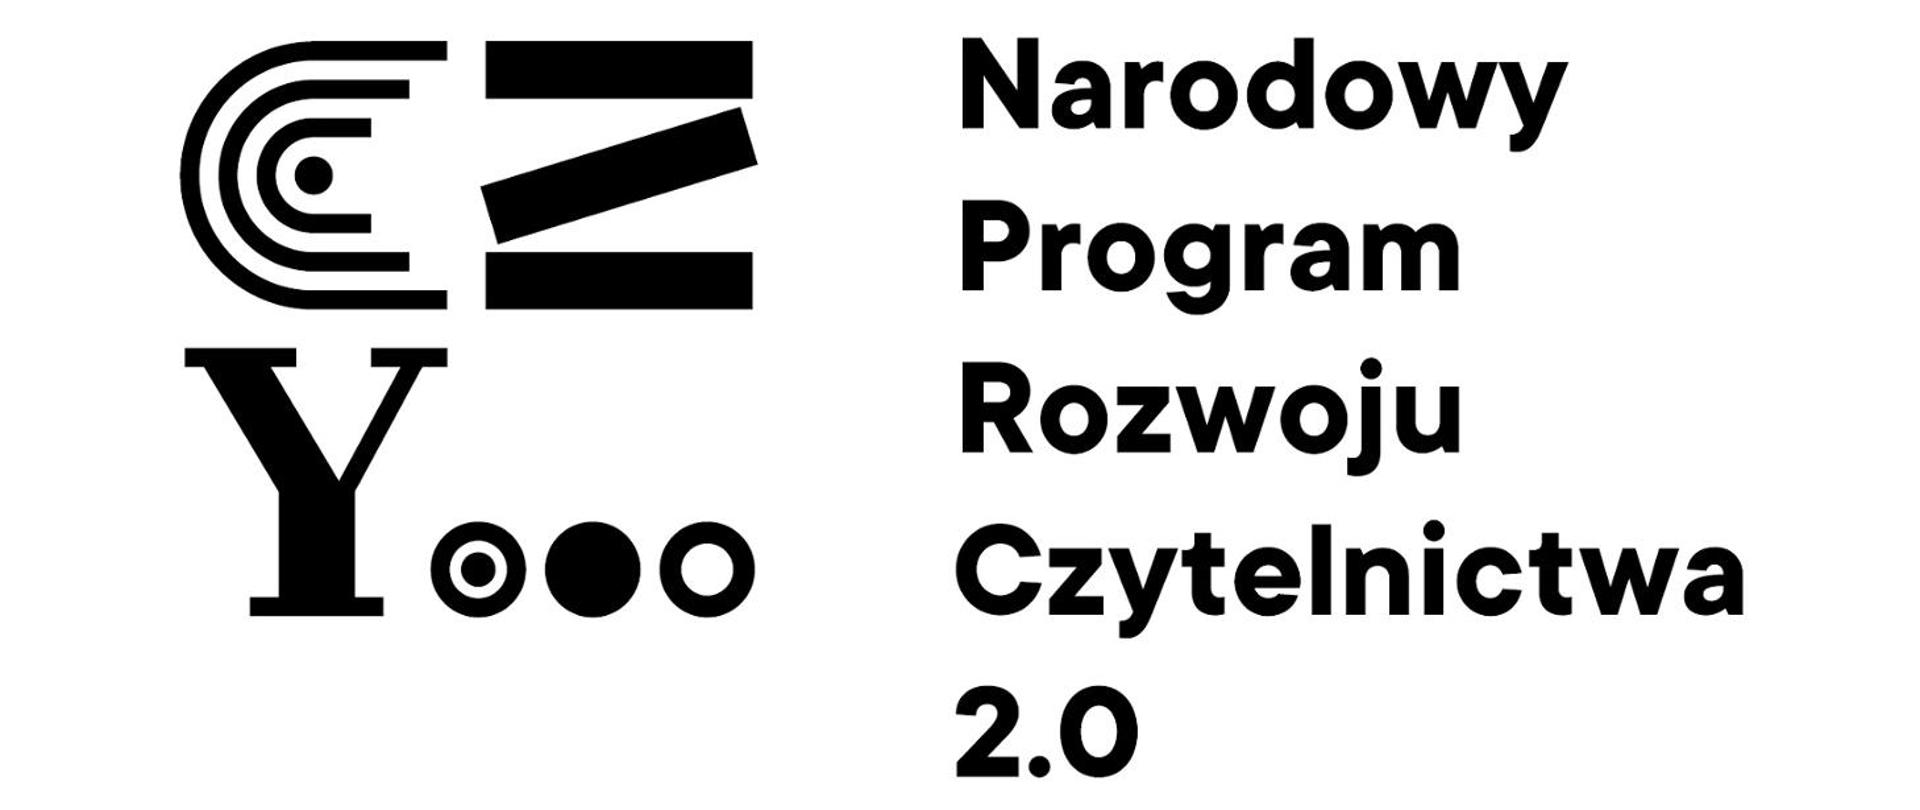 Czarno-białe logo Narodowego Programu Rozwoju Czytelnictwa